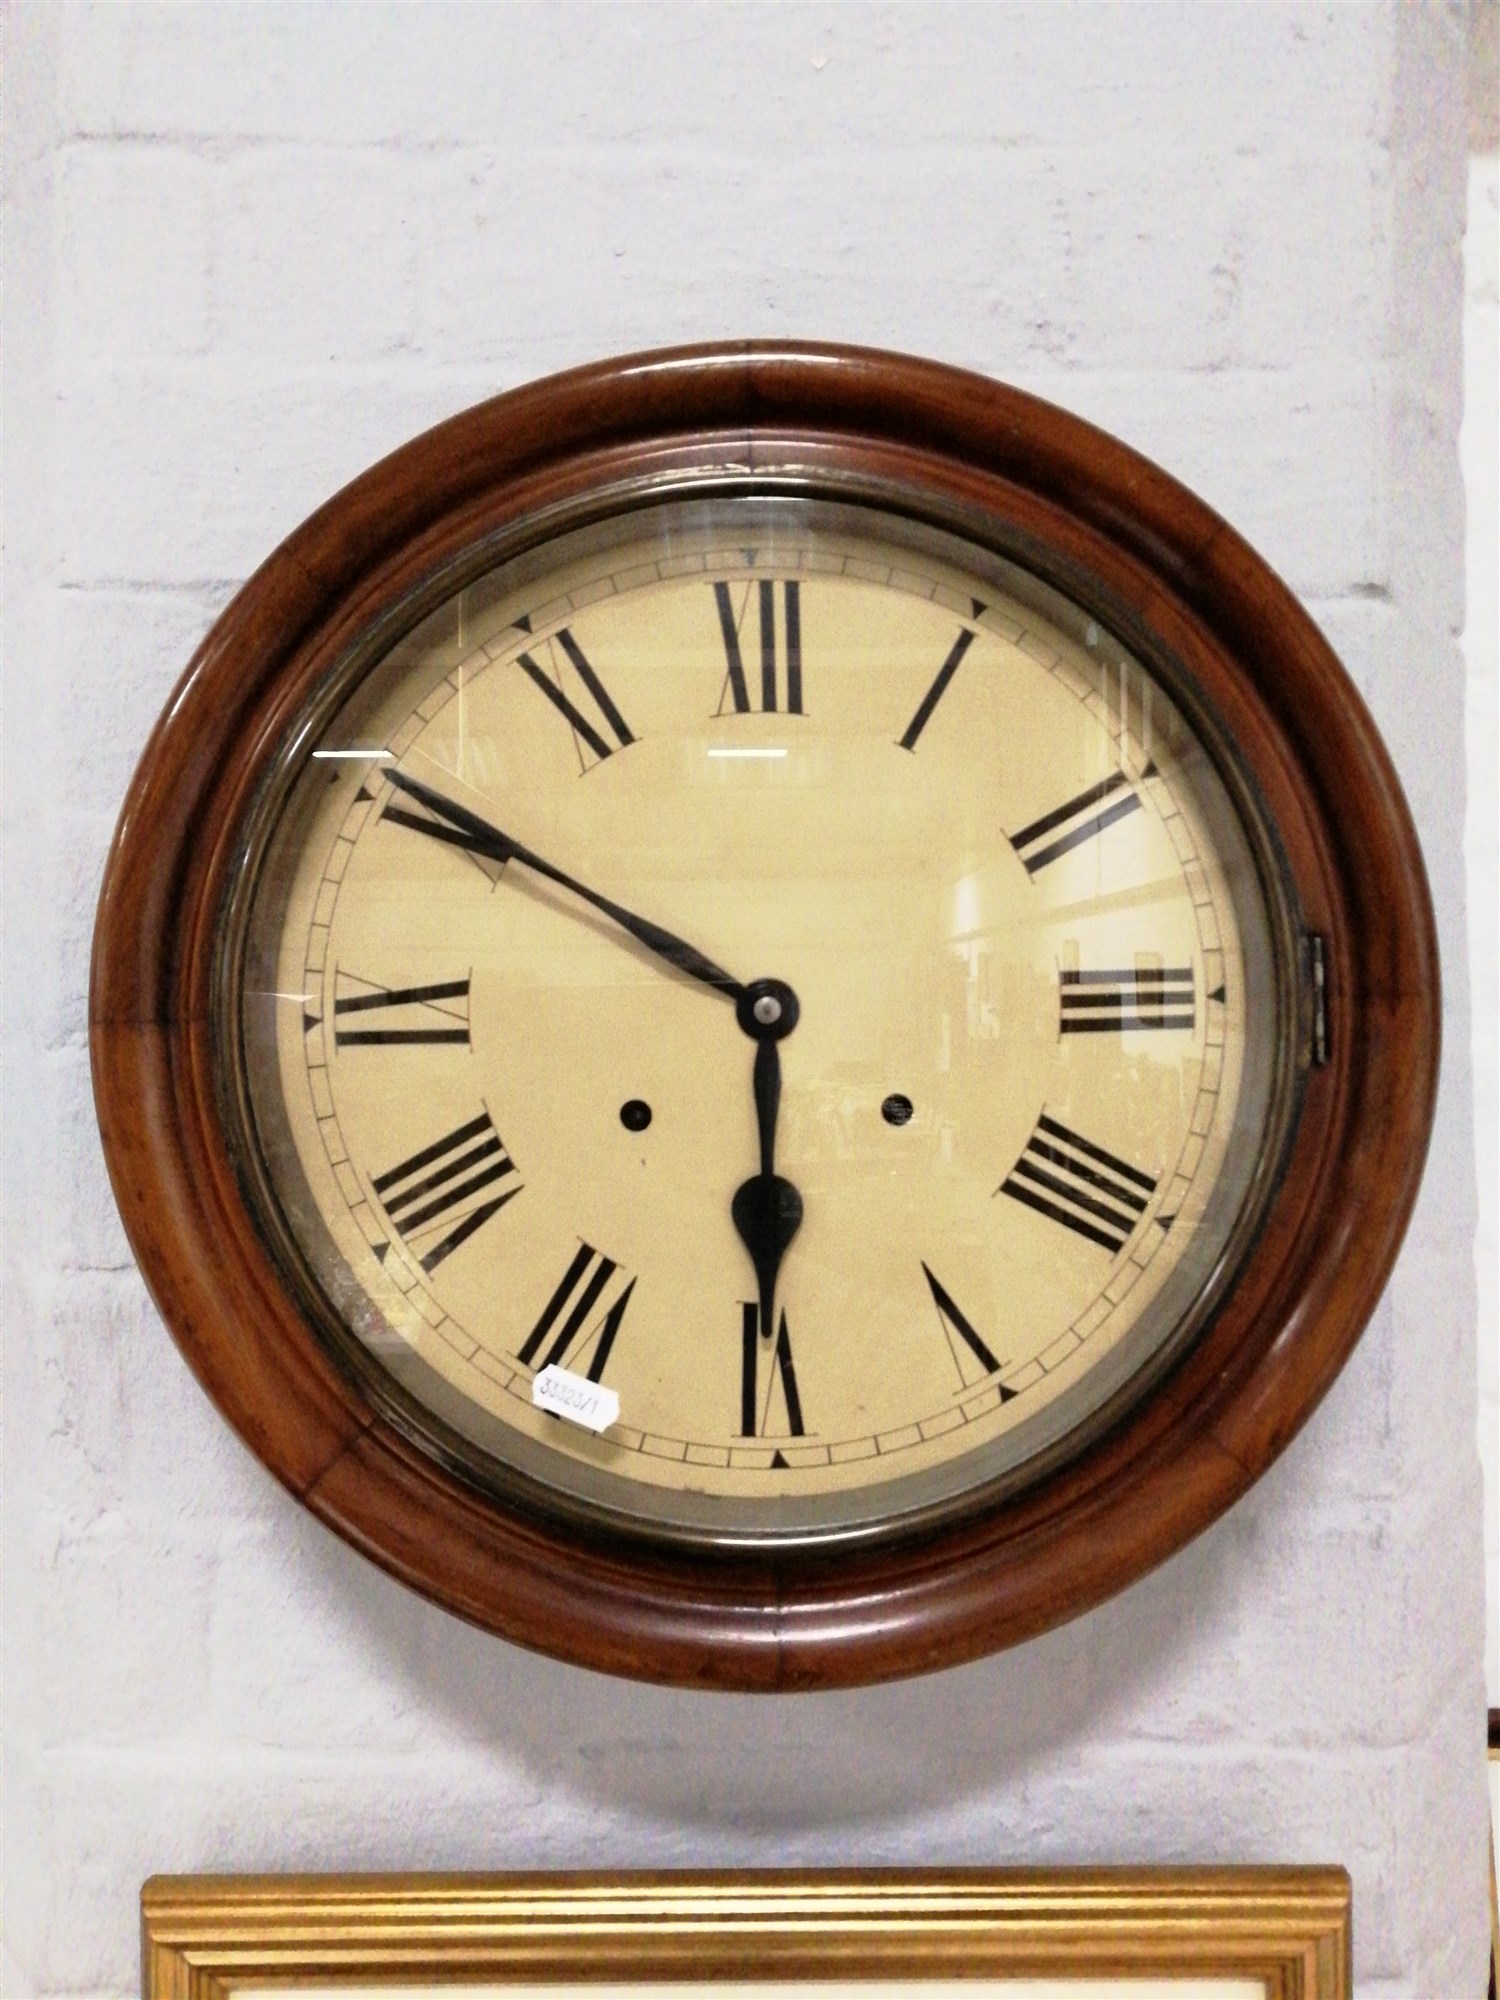 Mahogany cased wall clock.